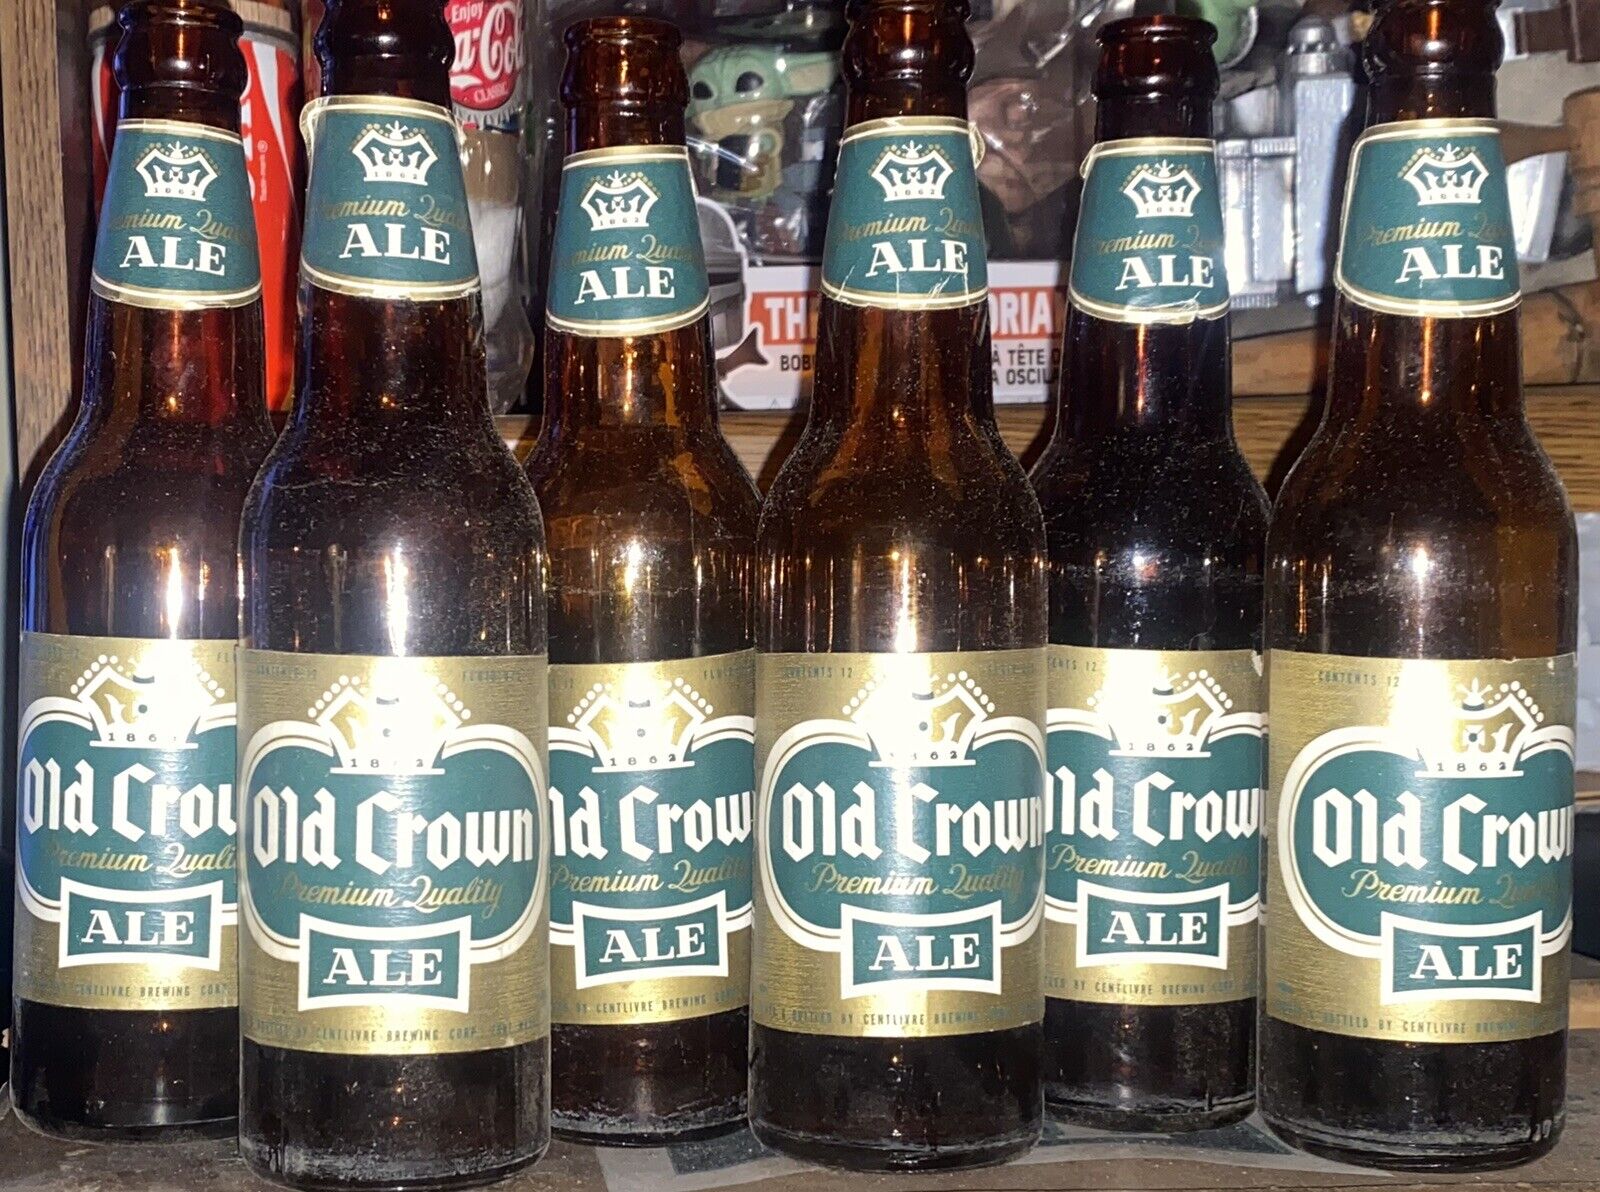 Old Crown Ale Beer Bottle (6-pack) Centlivre Brewing Corp. Fort Wayne, IND.